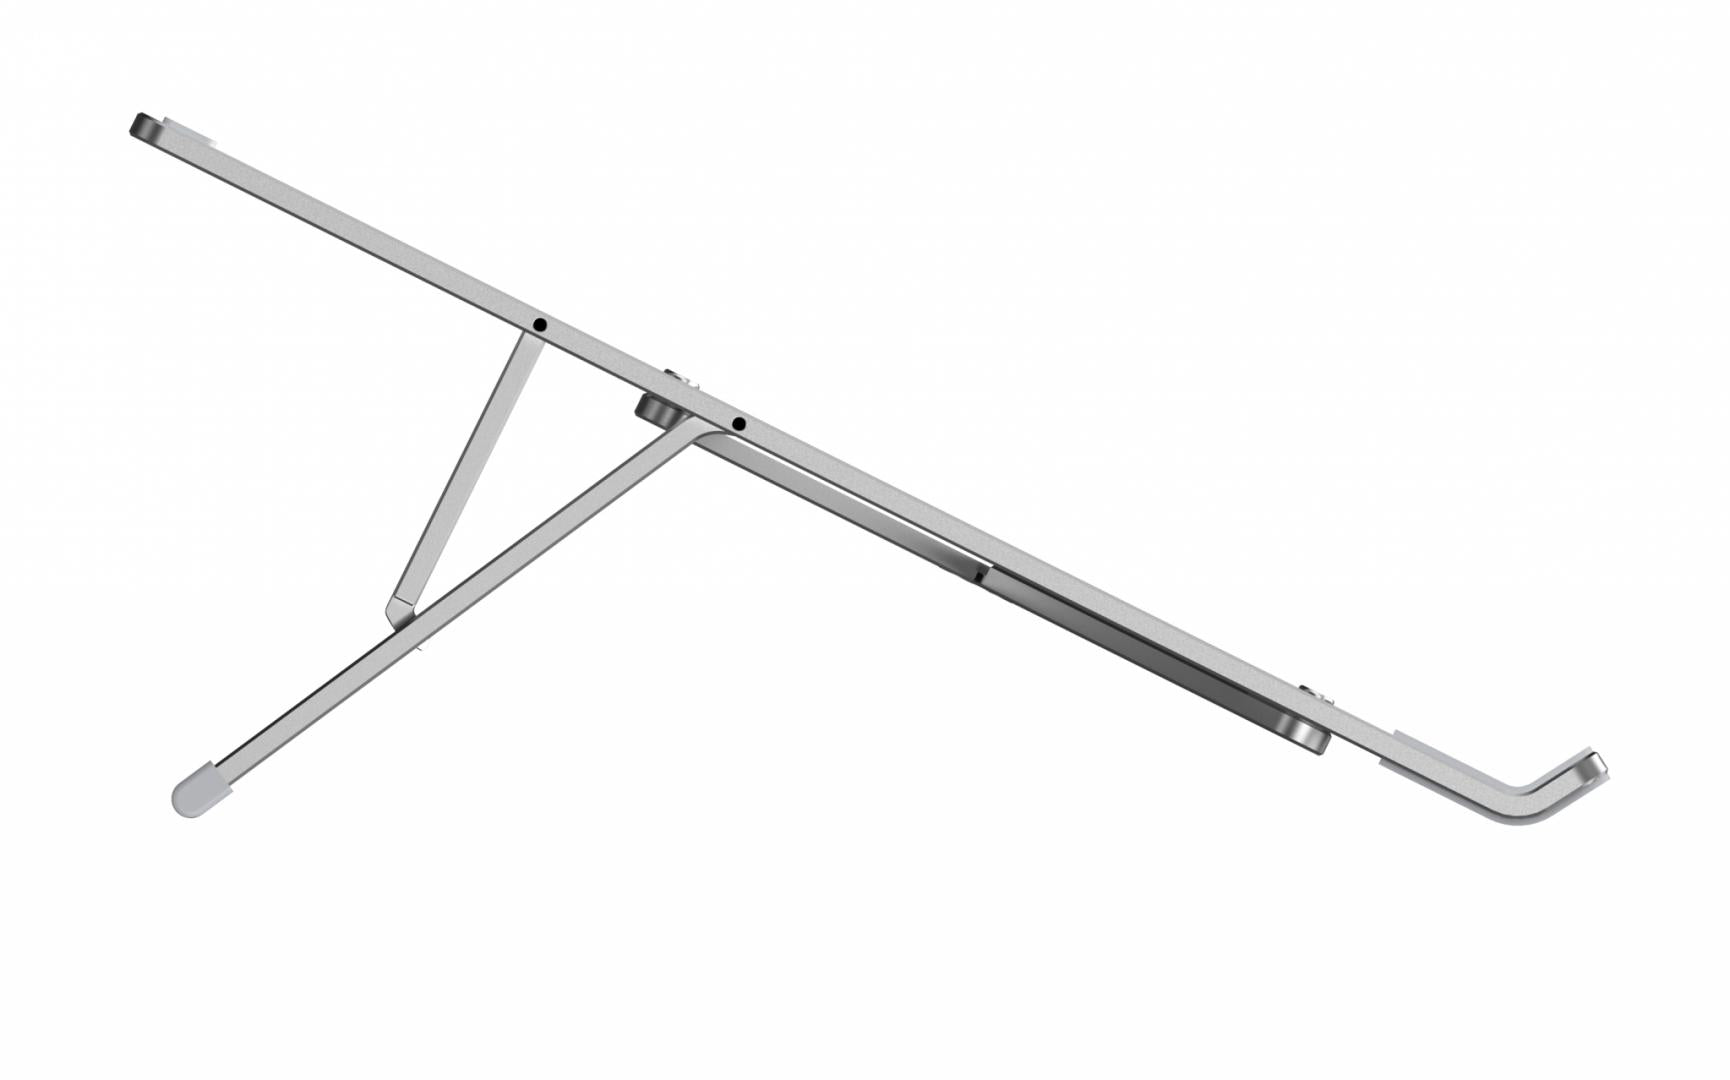 Suport laptop Serioux, SRXNCPU6L, material aluminiu, dimensiune deschisă: 197x245x4mm,dimensiune pliată: 60 x 245 x 4mm, grosime: 4mm, greutate: 215g, dimensiune compatibilă: până la 15.6 